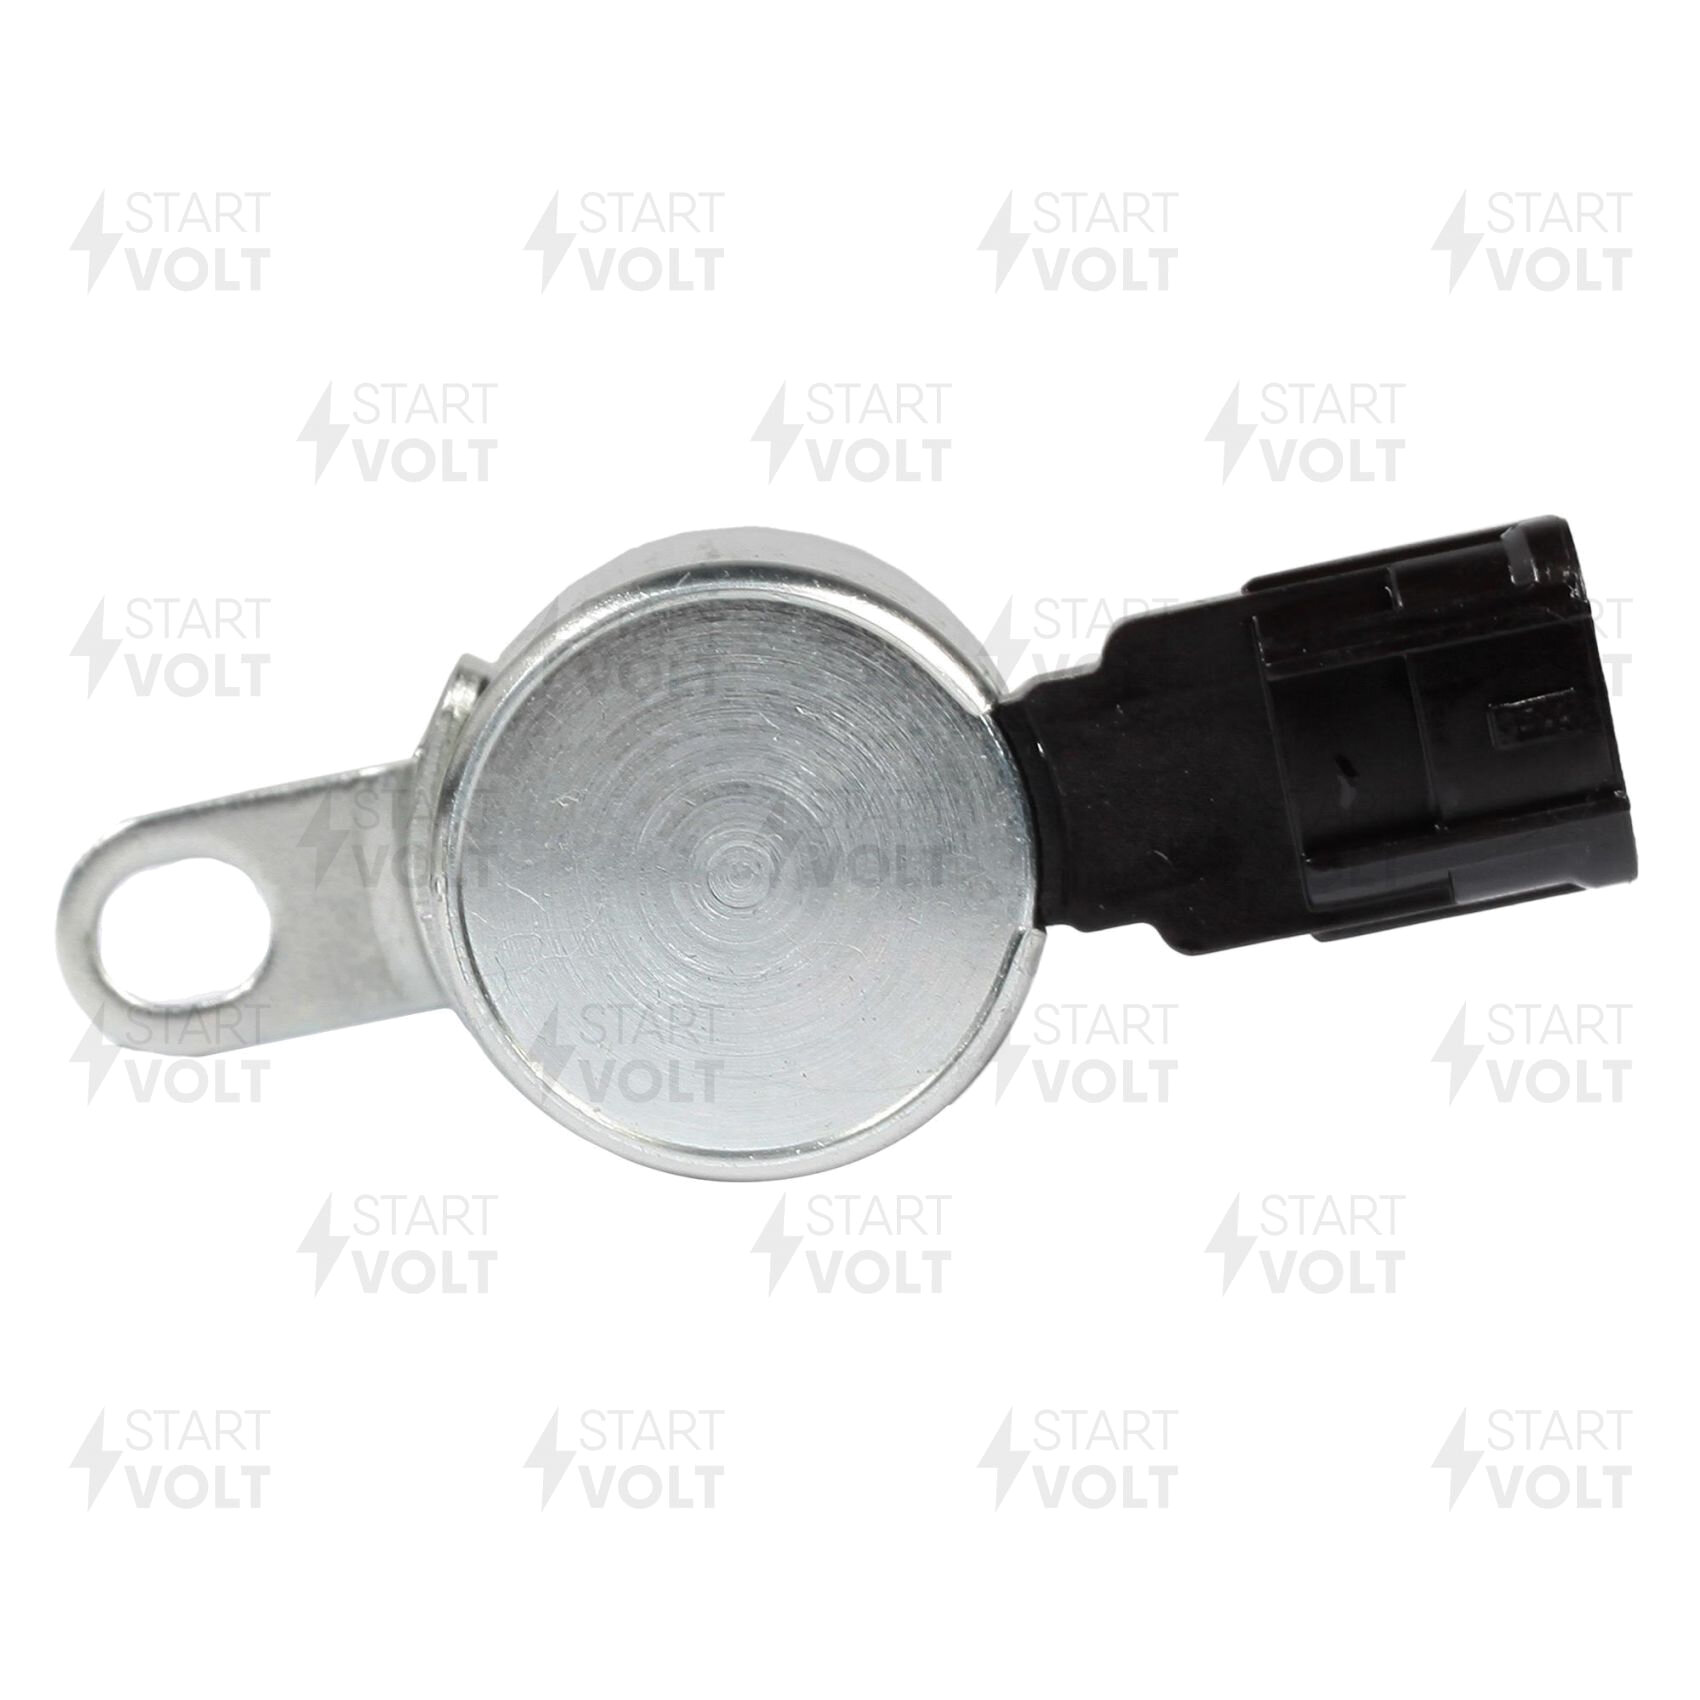 Клапан электромагнитный регулировки фаз ГРМ для автомобилей Subaru Forester SH (07-)/Legacy BL (06-) EJ25 2.5i StartVolt - фото №10